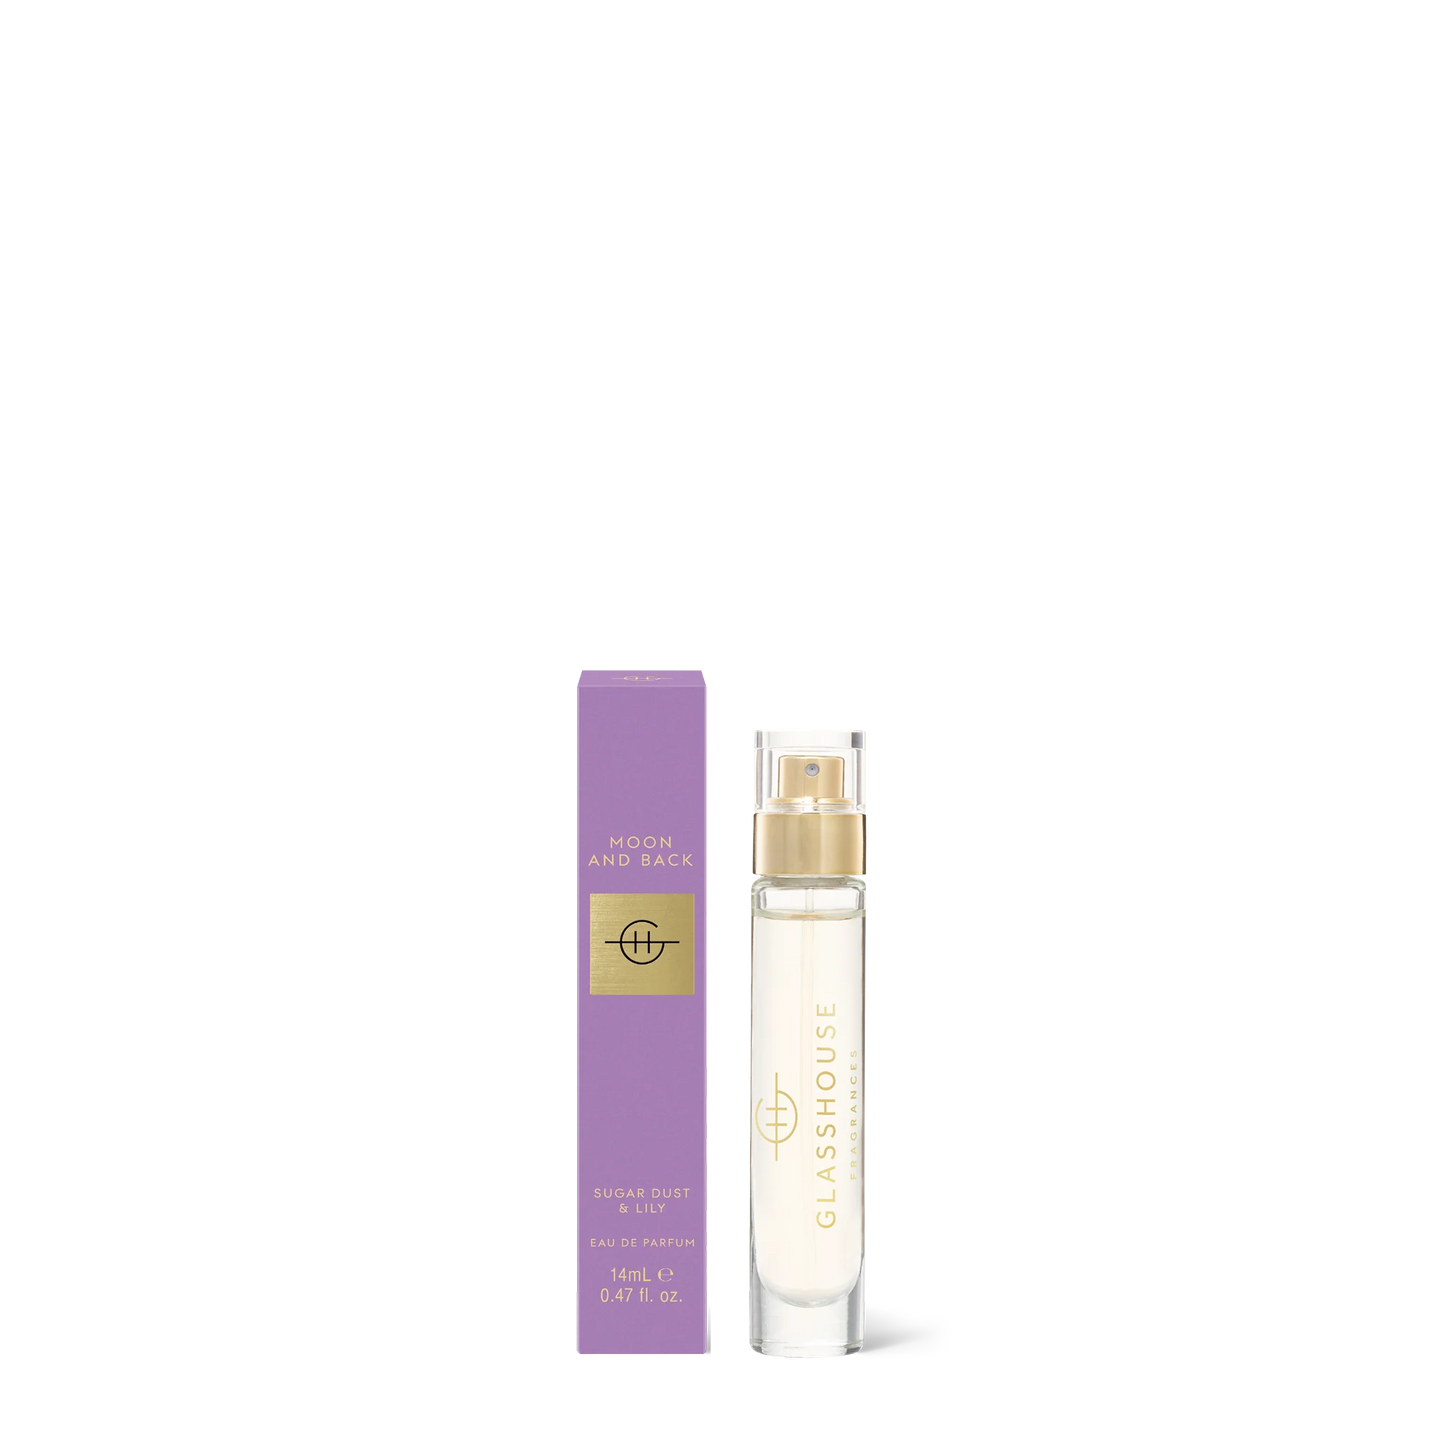 bottle of Moon and Back Eau De Parfum set next to its purple box packaging.